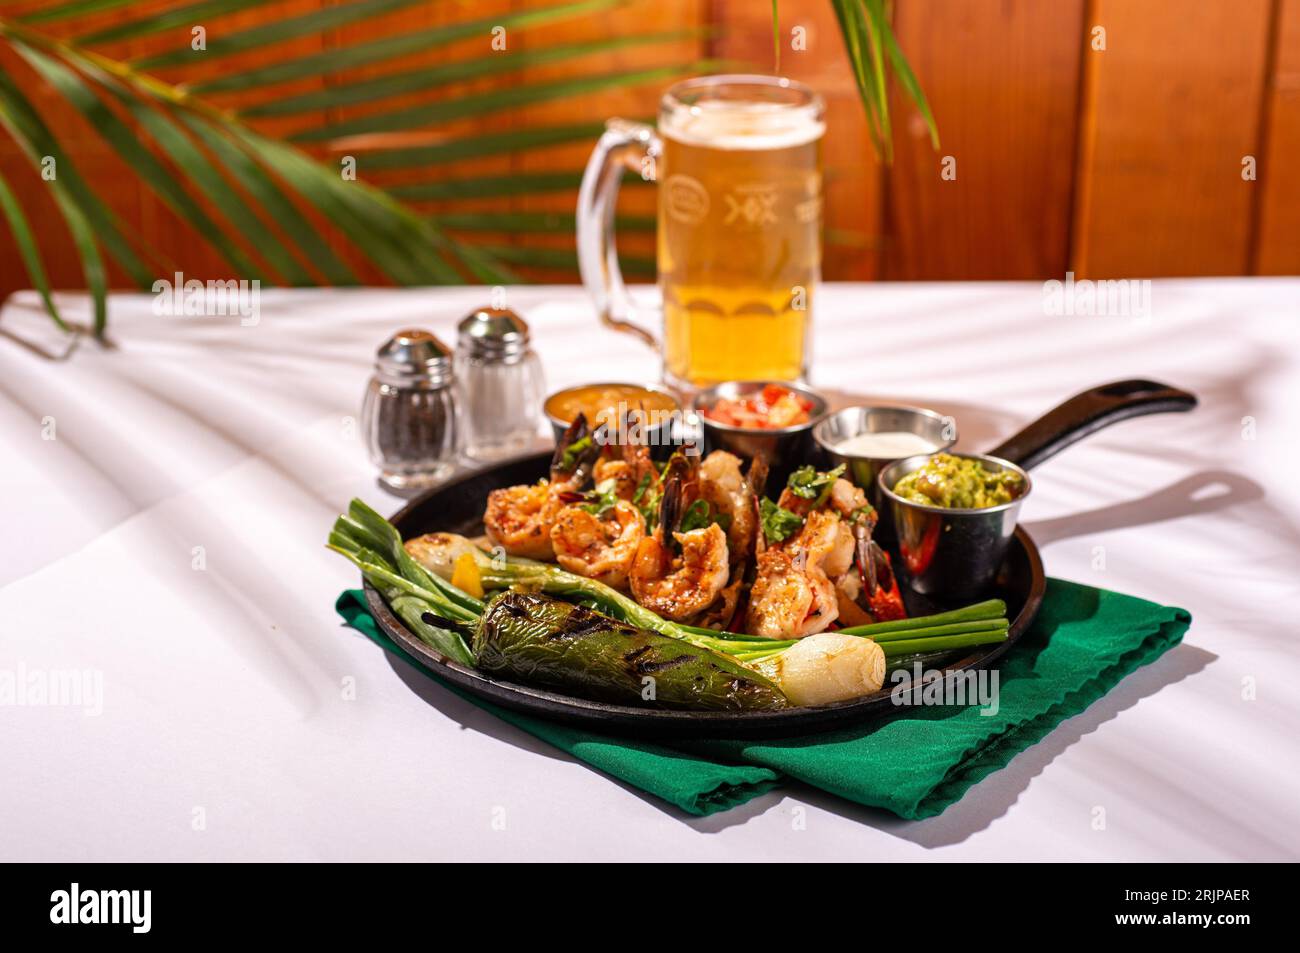 Un gros plan d'une assiette de légumes et de crevettes fraîchement cuits, avec un verre de bière en arrière-plan Banque D'Images